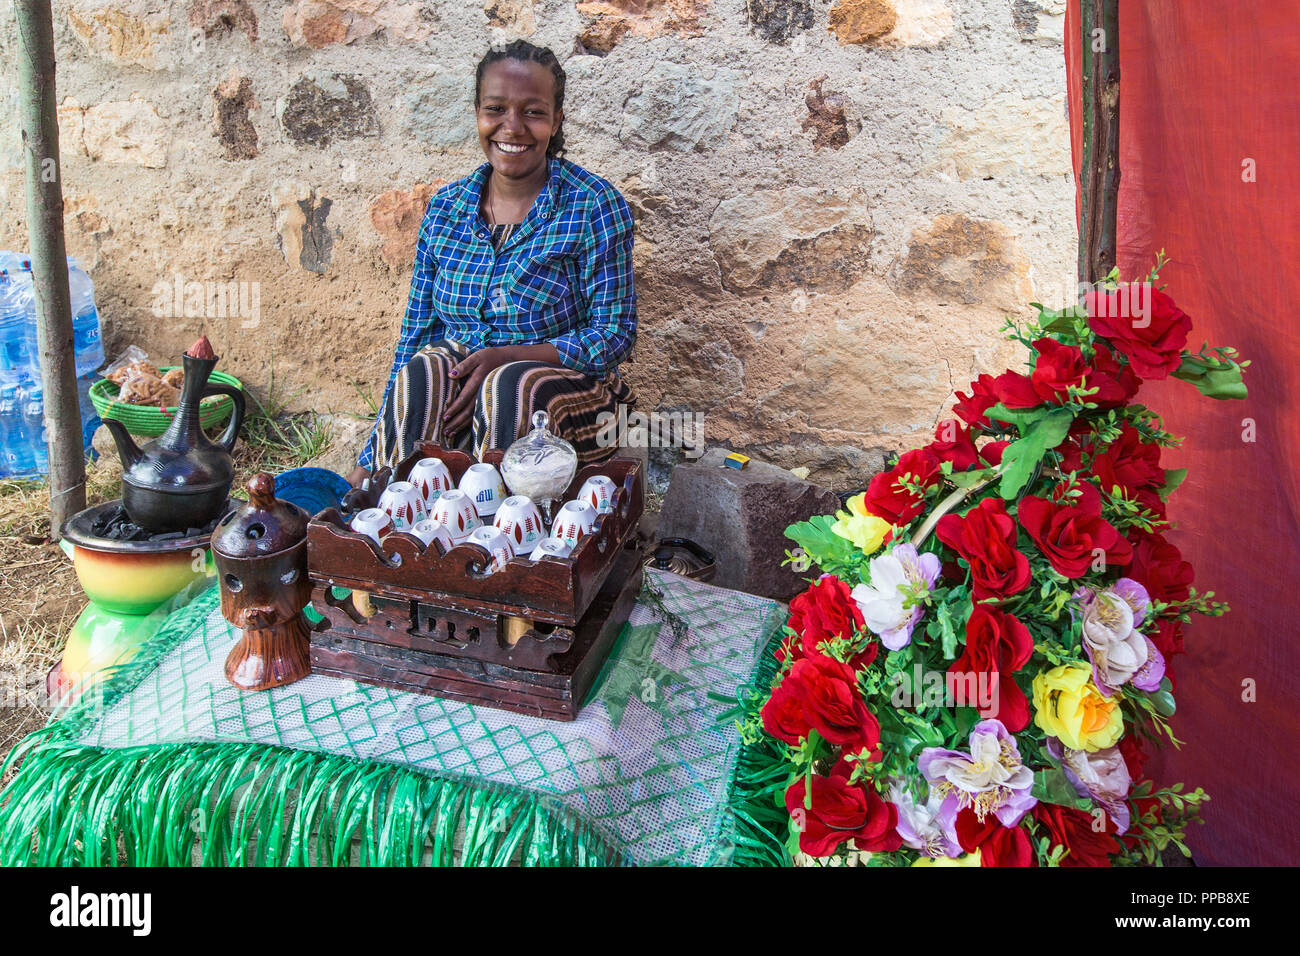 Coffee seller, Palace of Emperor Menelik II, Mount Entoto, Addis Ababa, Ethiopia Stock Photo